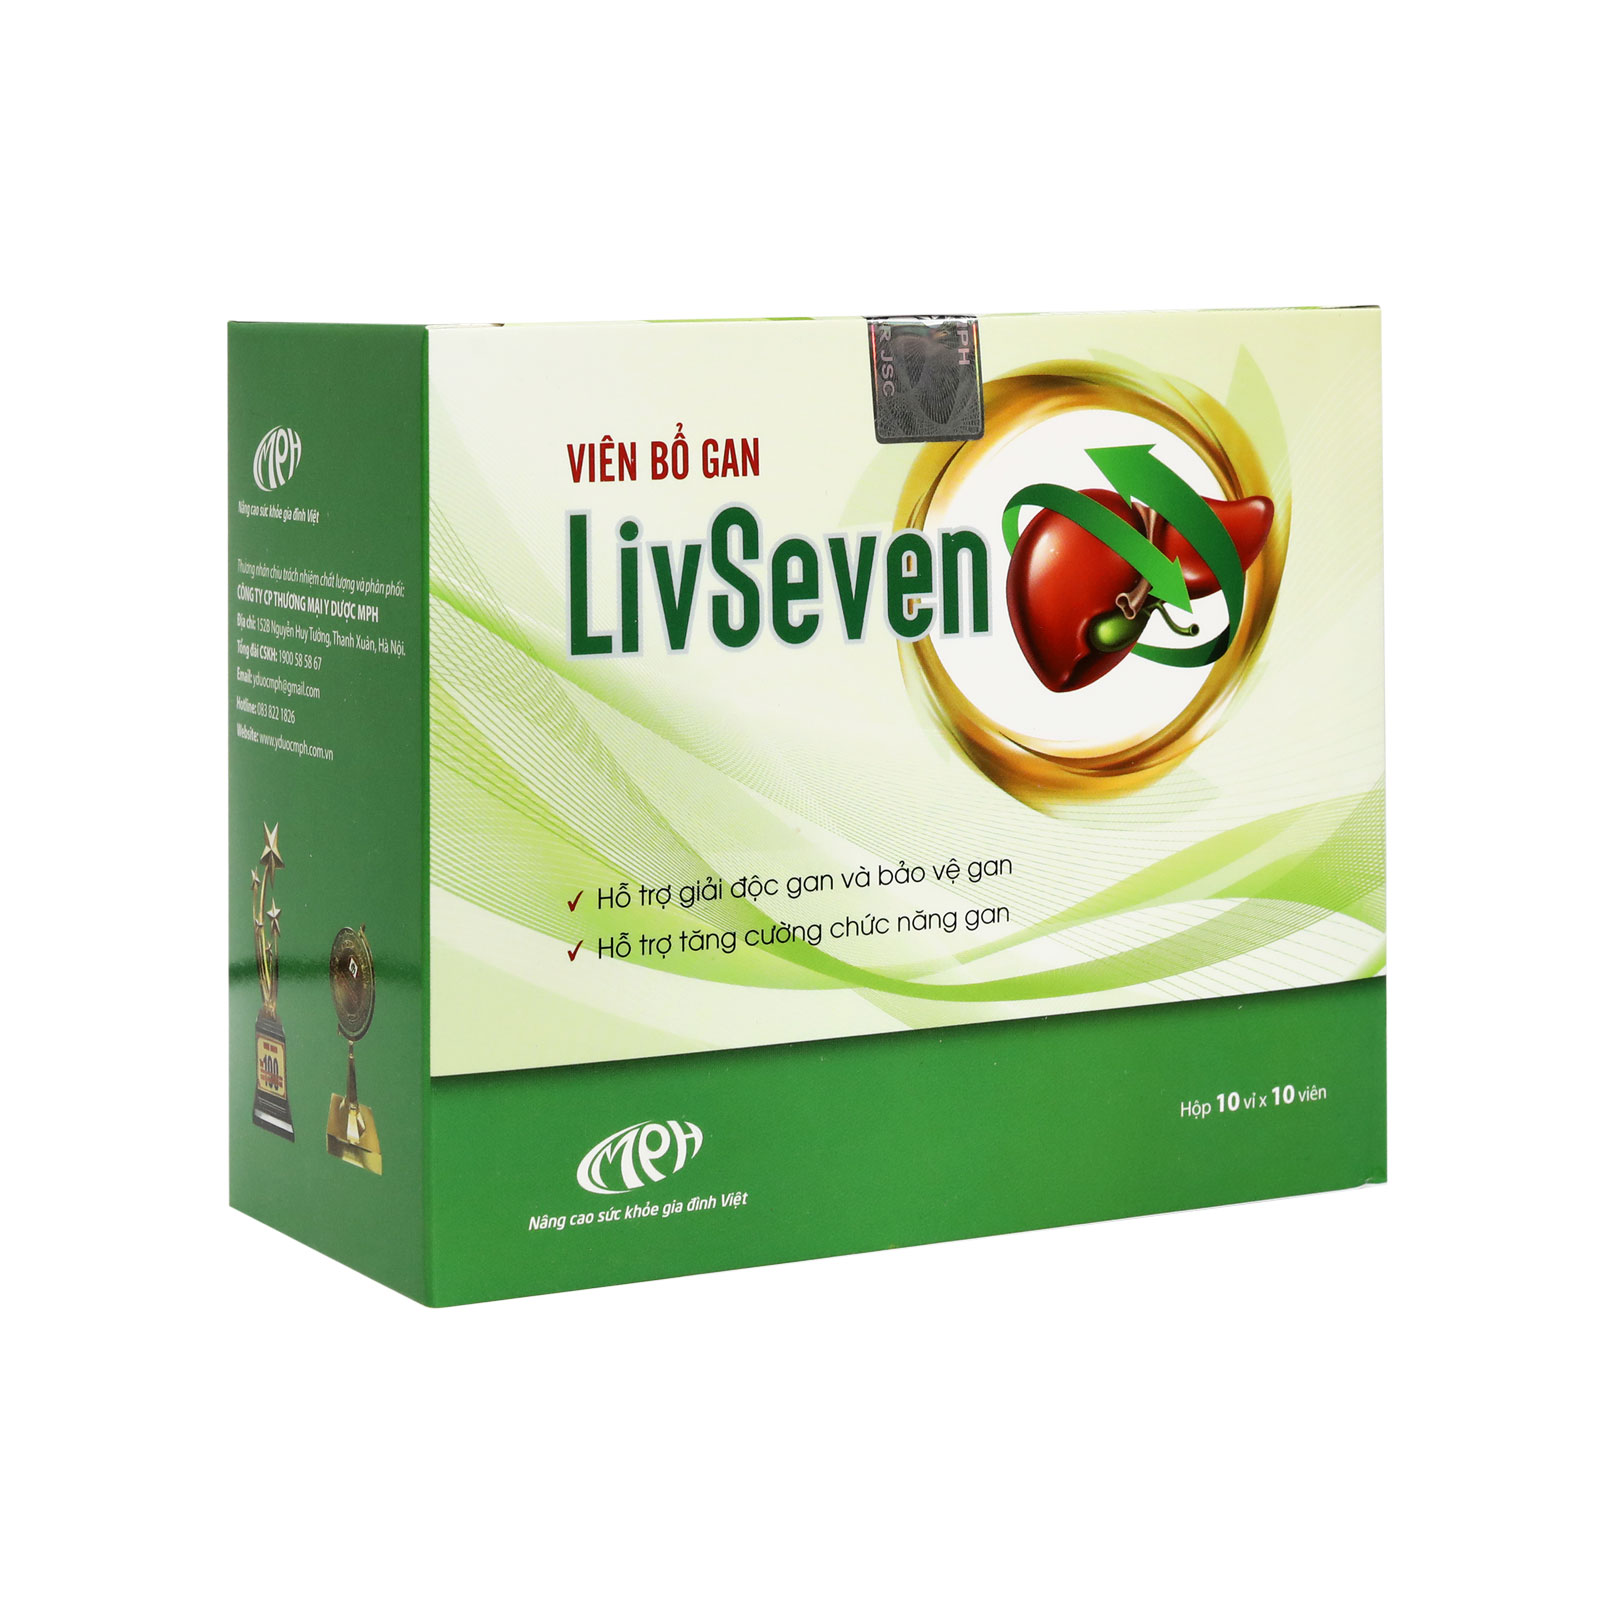 Viên bổ gan Livseven - Giải độc gan bảo vệ tế bào gan tăng cường chức năng gan hỗ trợ điều trị men gan cao gan nhiễm mỡ viêm gan B cấp tính và mạn tính. Hộp 100 viên.